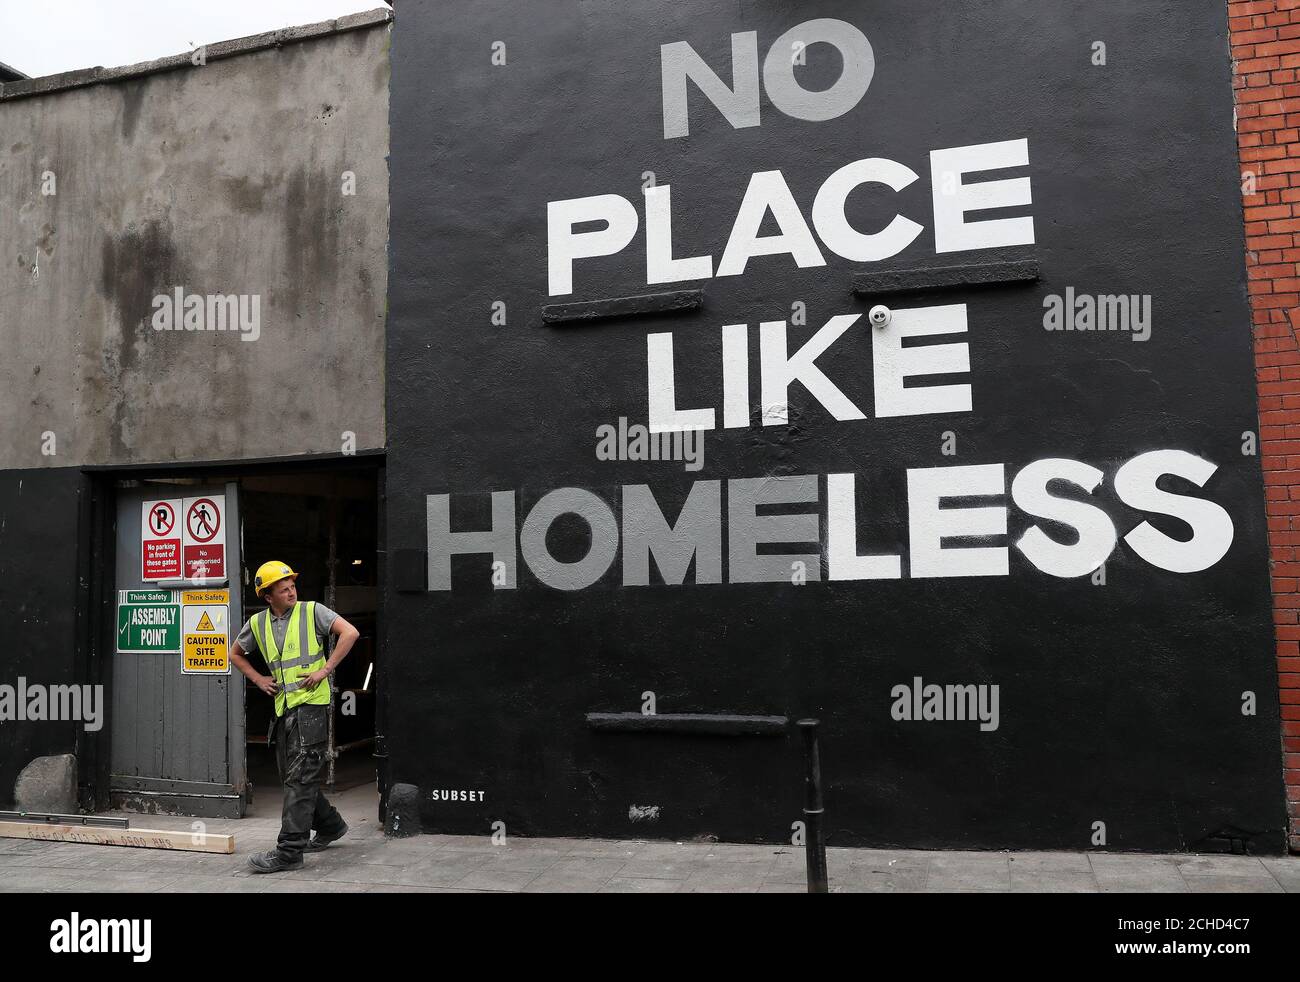 Un hombre mira un nuevo mural en el centro de Dublín por grupo de arte subconjunto. Según las últimas cifras del Departamento de Vivienda, hay casi 10.000 personas sin hogar en Irlanda, incluyendo 3,755 niños. Foto de stock